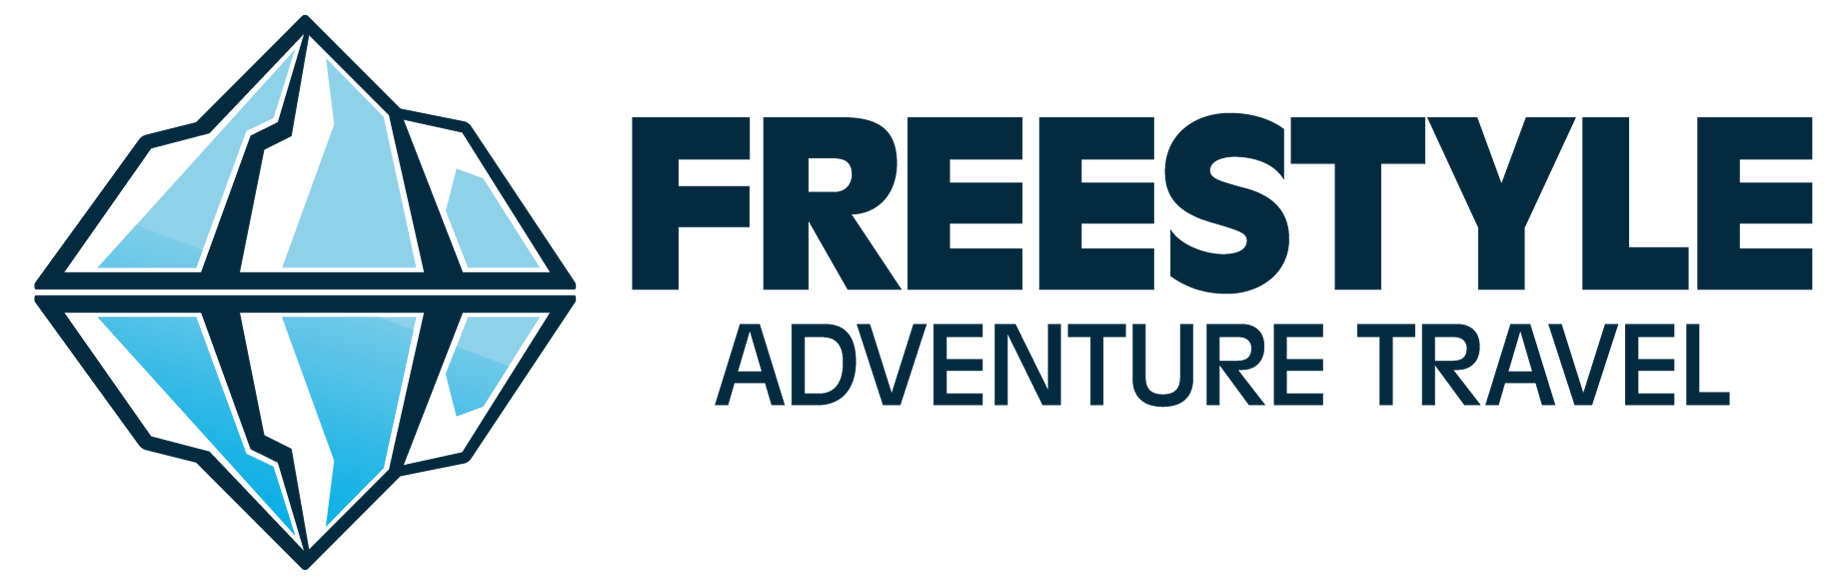 Freestyle Adventure Travel